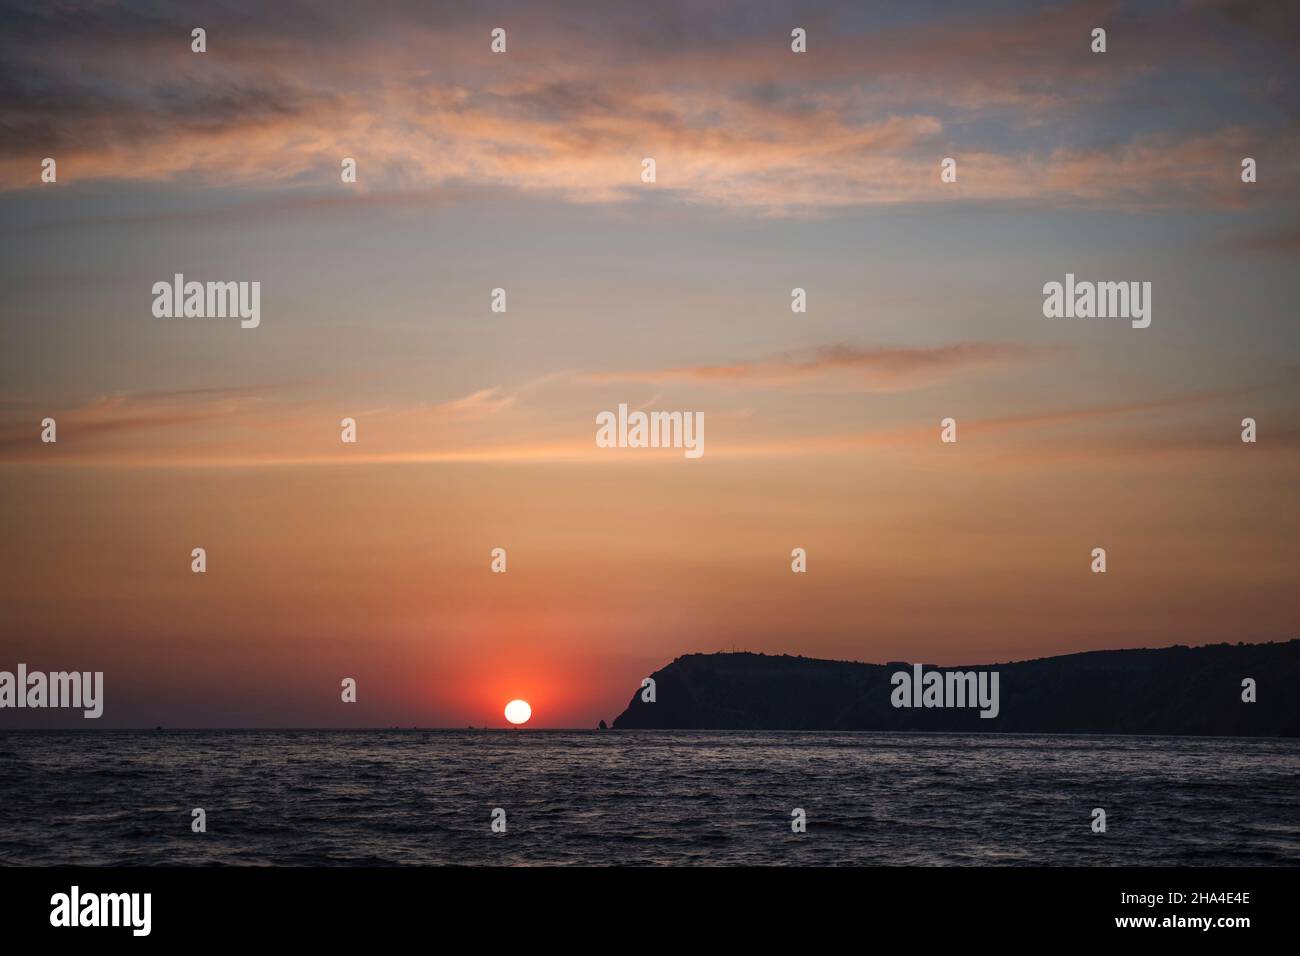 Dramatische Meereslandschaft über der schwarzen Meeresoberfläche während des Sonnenuntergangs, Silhouette der felsigen vulkanischen Klippe wird durch den warmen Sonnenuntergang beleuchtet. Stockfoto